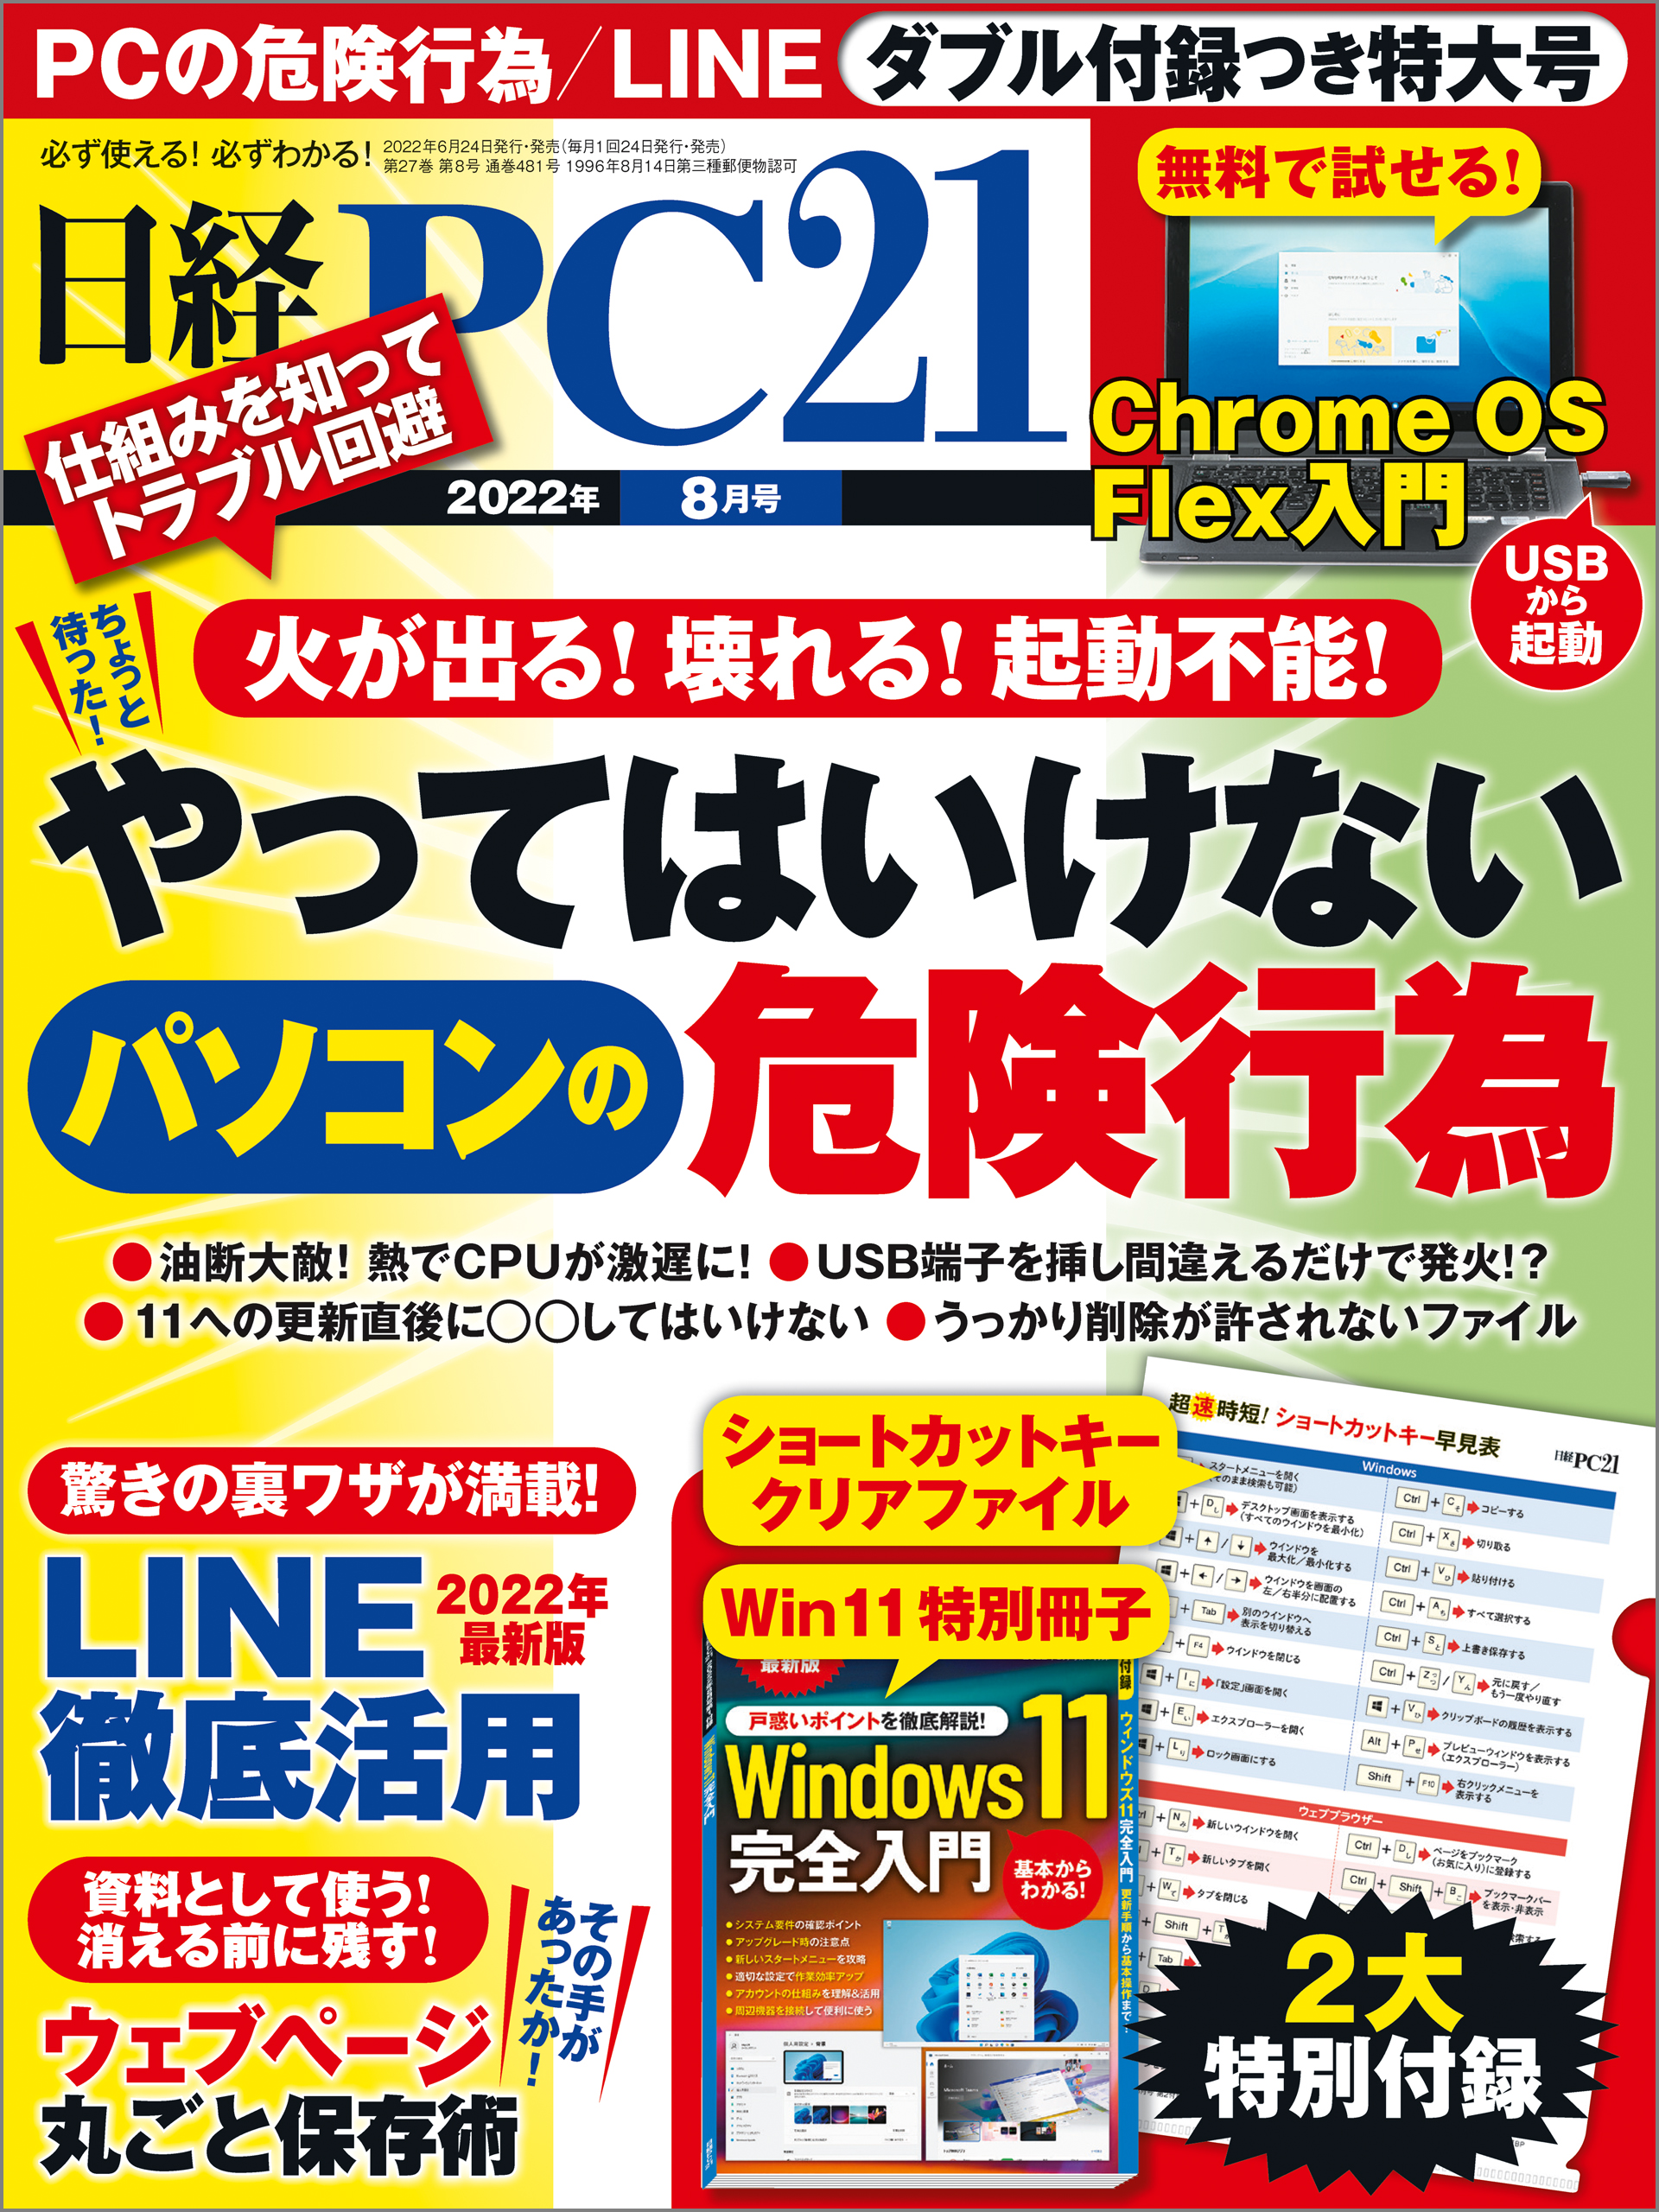 アバスト クリーンアップ プレミアム １年 1台版 [ダウンロード版] Windows対応   究極の PC チューンアップ機能